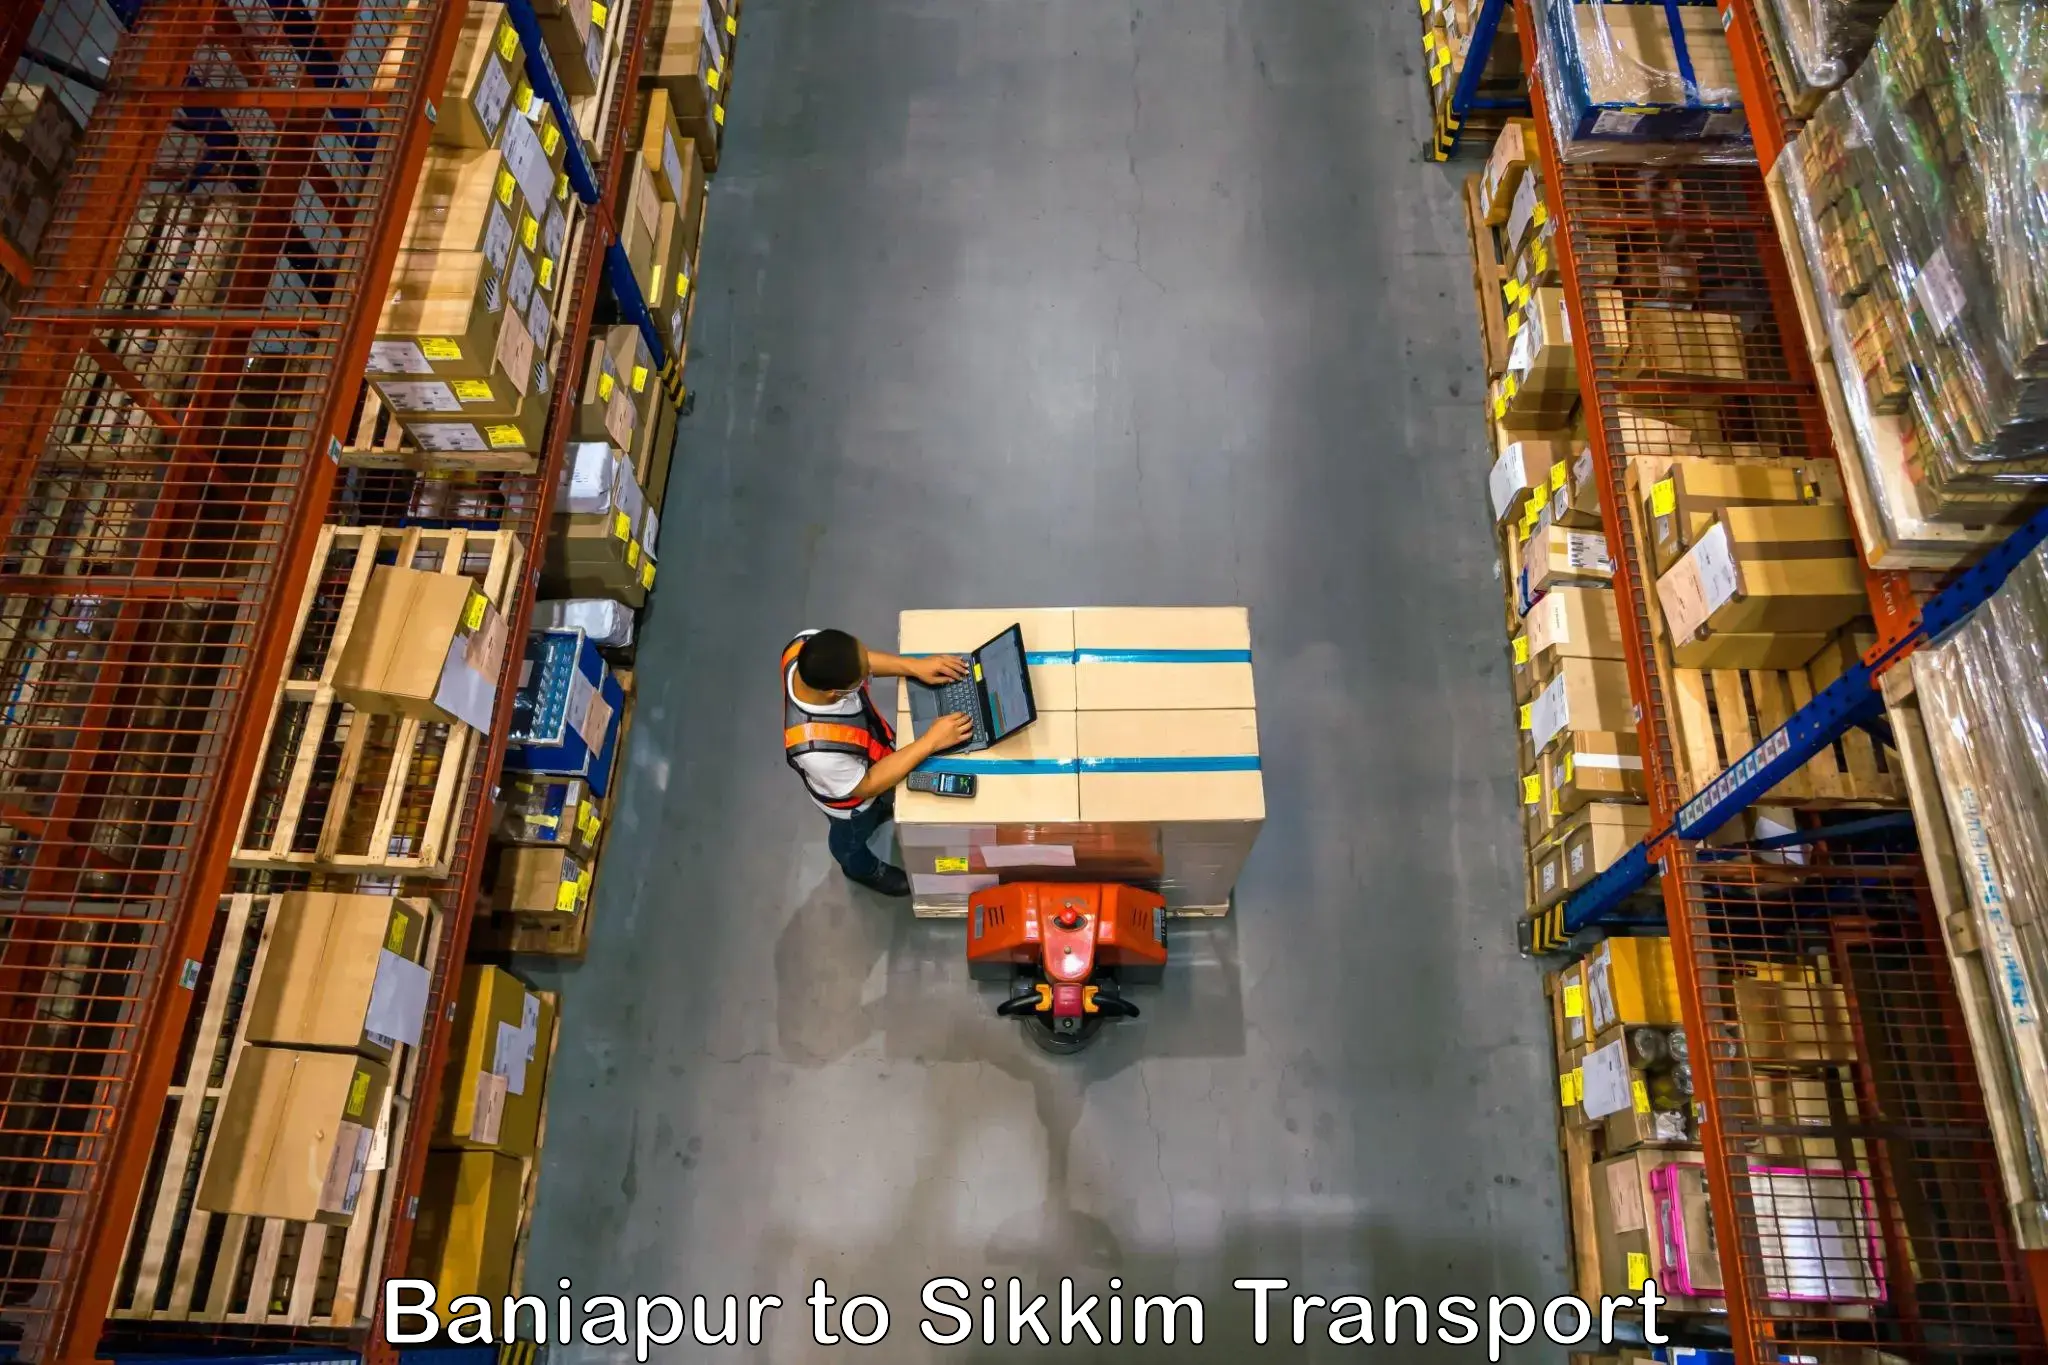 Furniture transport service Baniapur to Geyzing